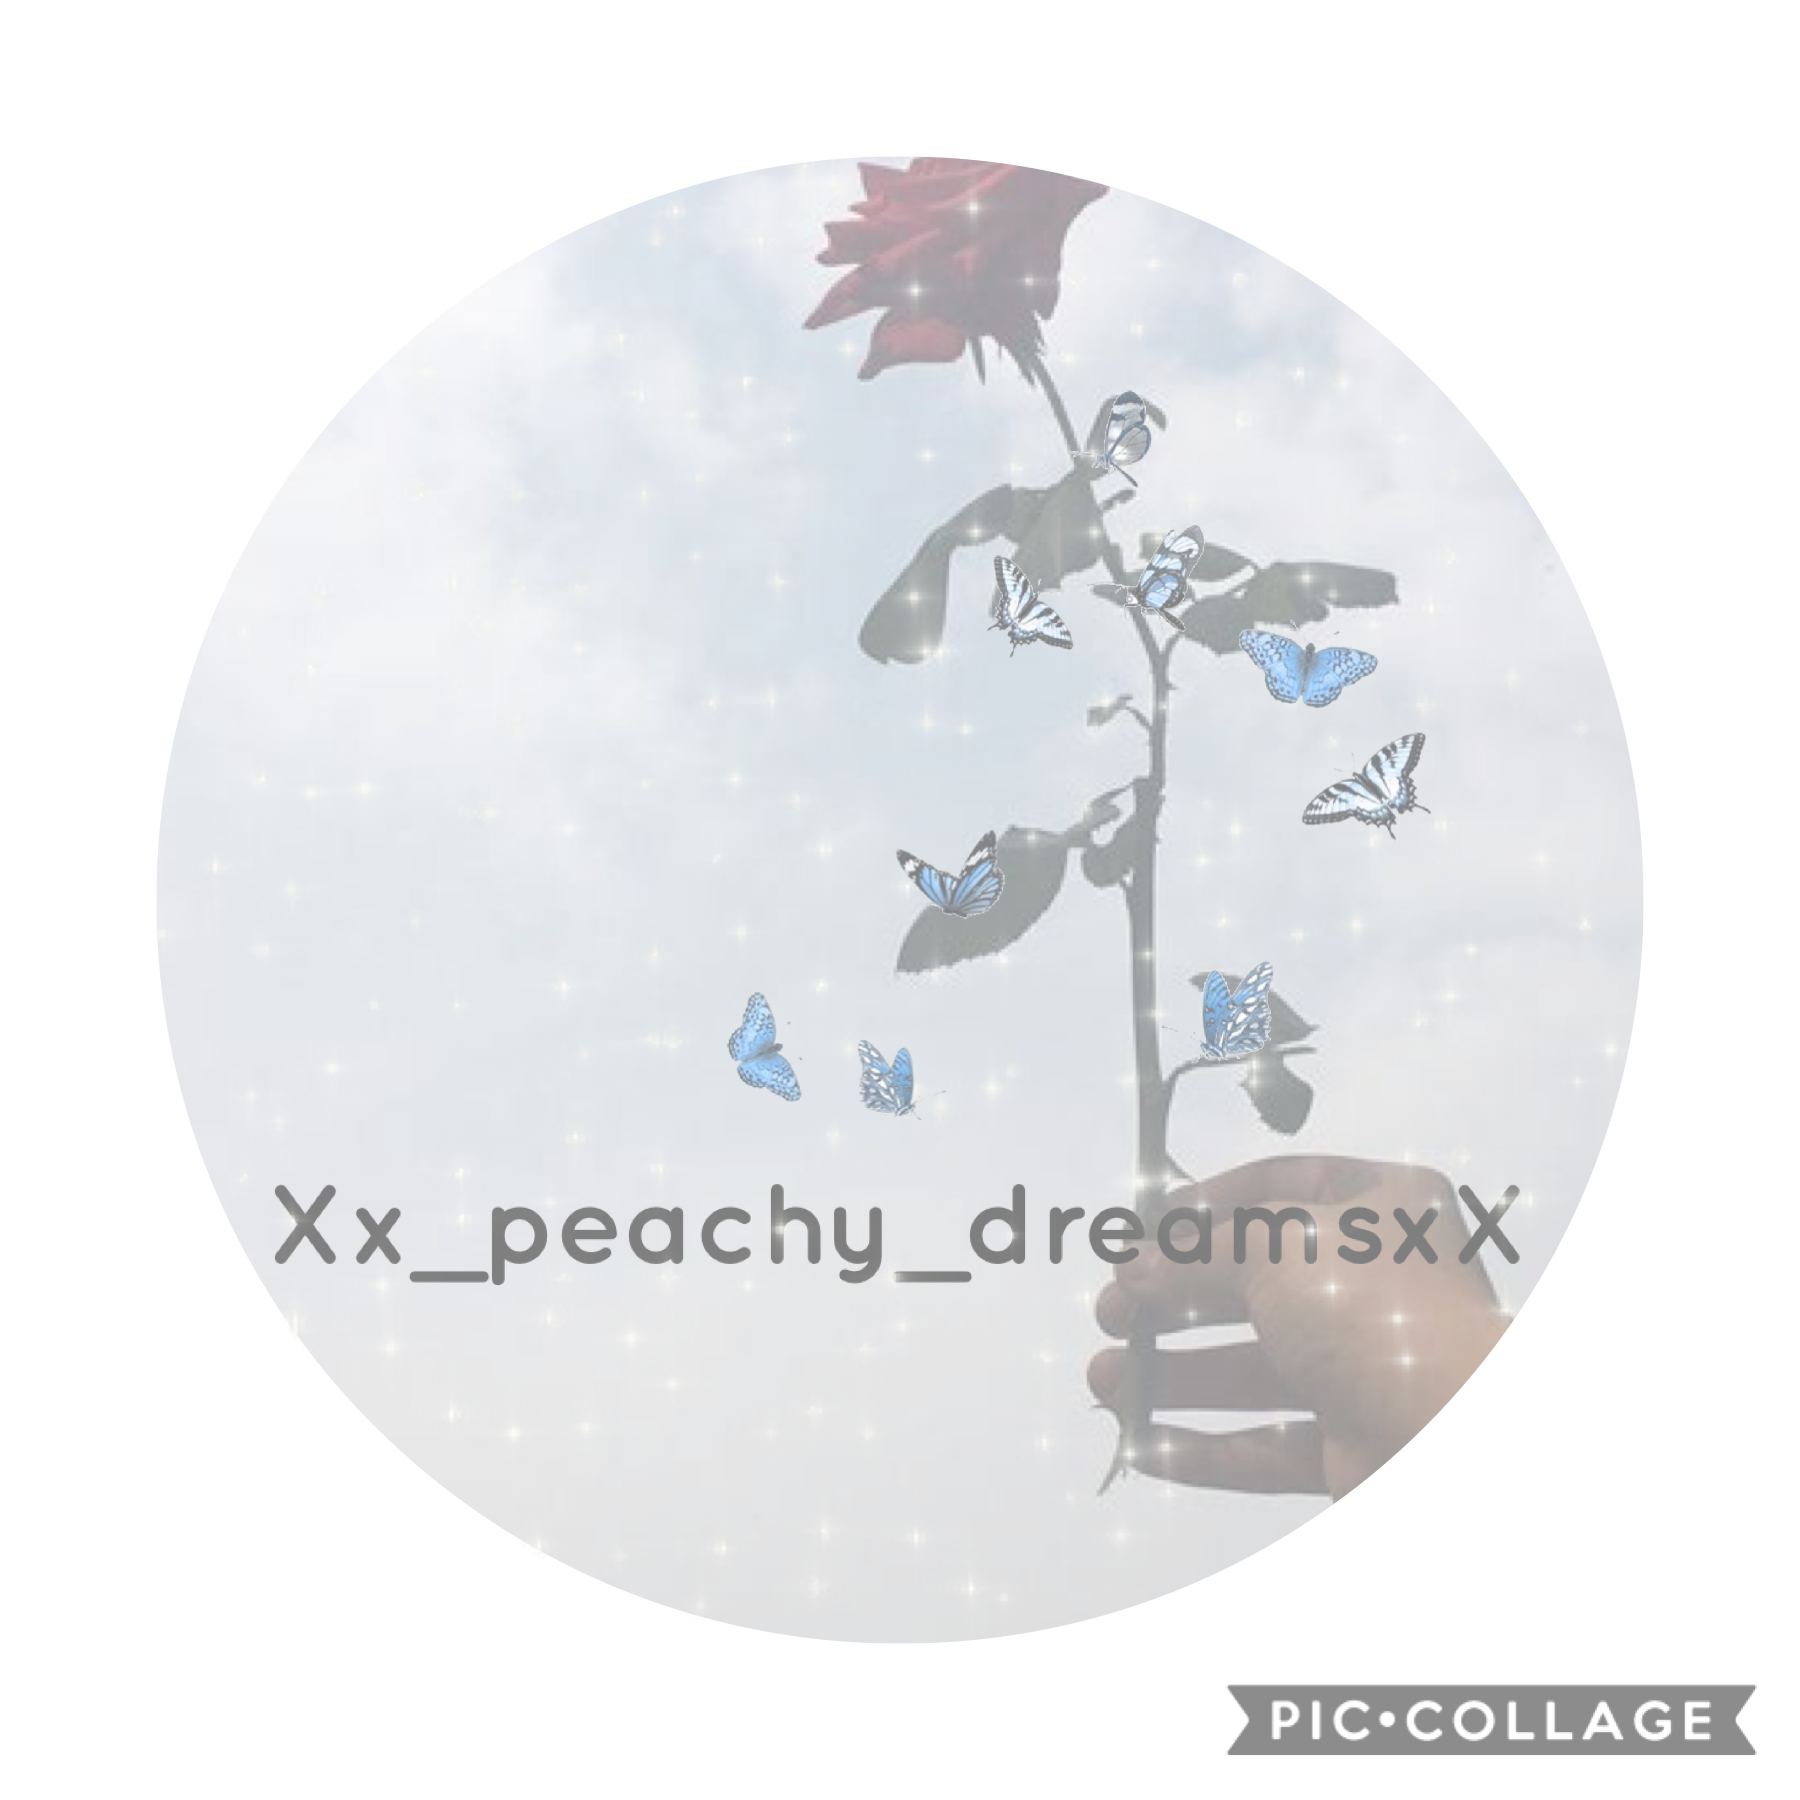 For Xx_peachy_dreams_xX